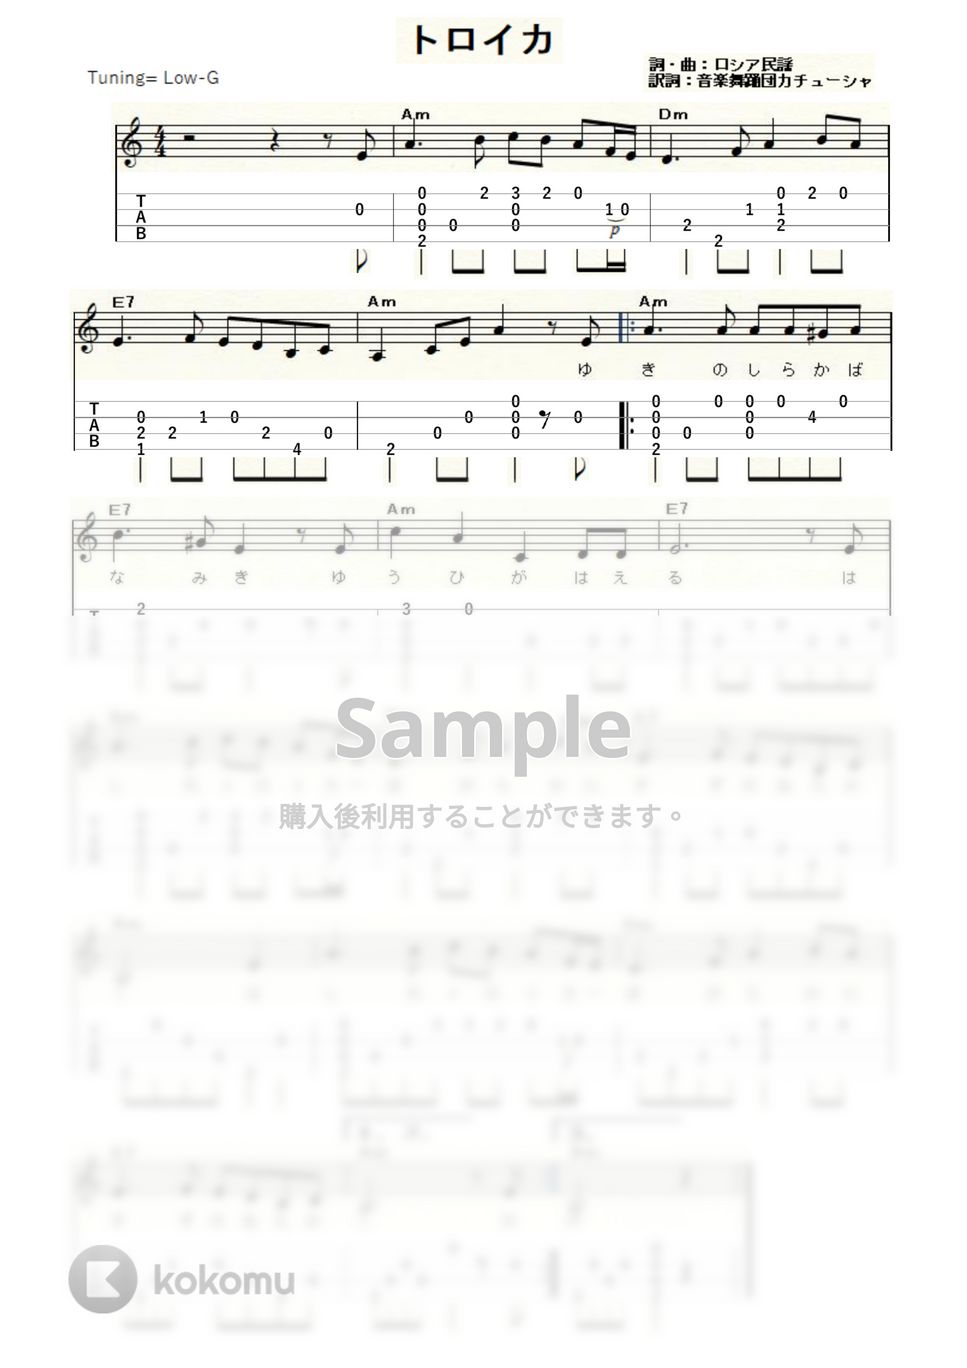 トロイカ (ｳｸﾚﾚｿﾛ / Low-G / 初級～中級) by ukulelepapa